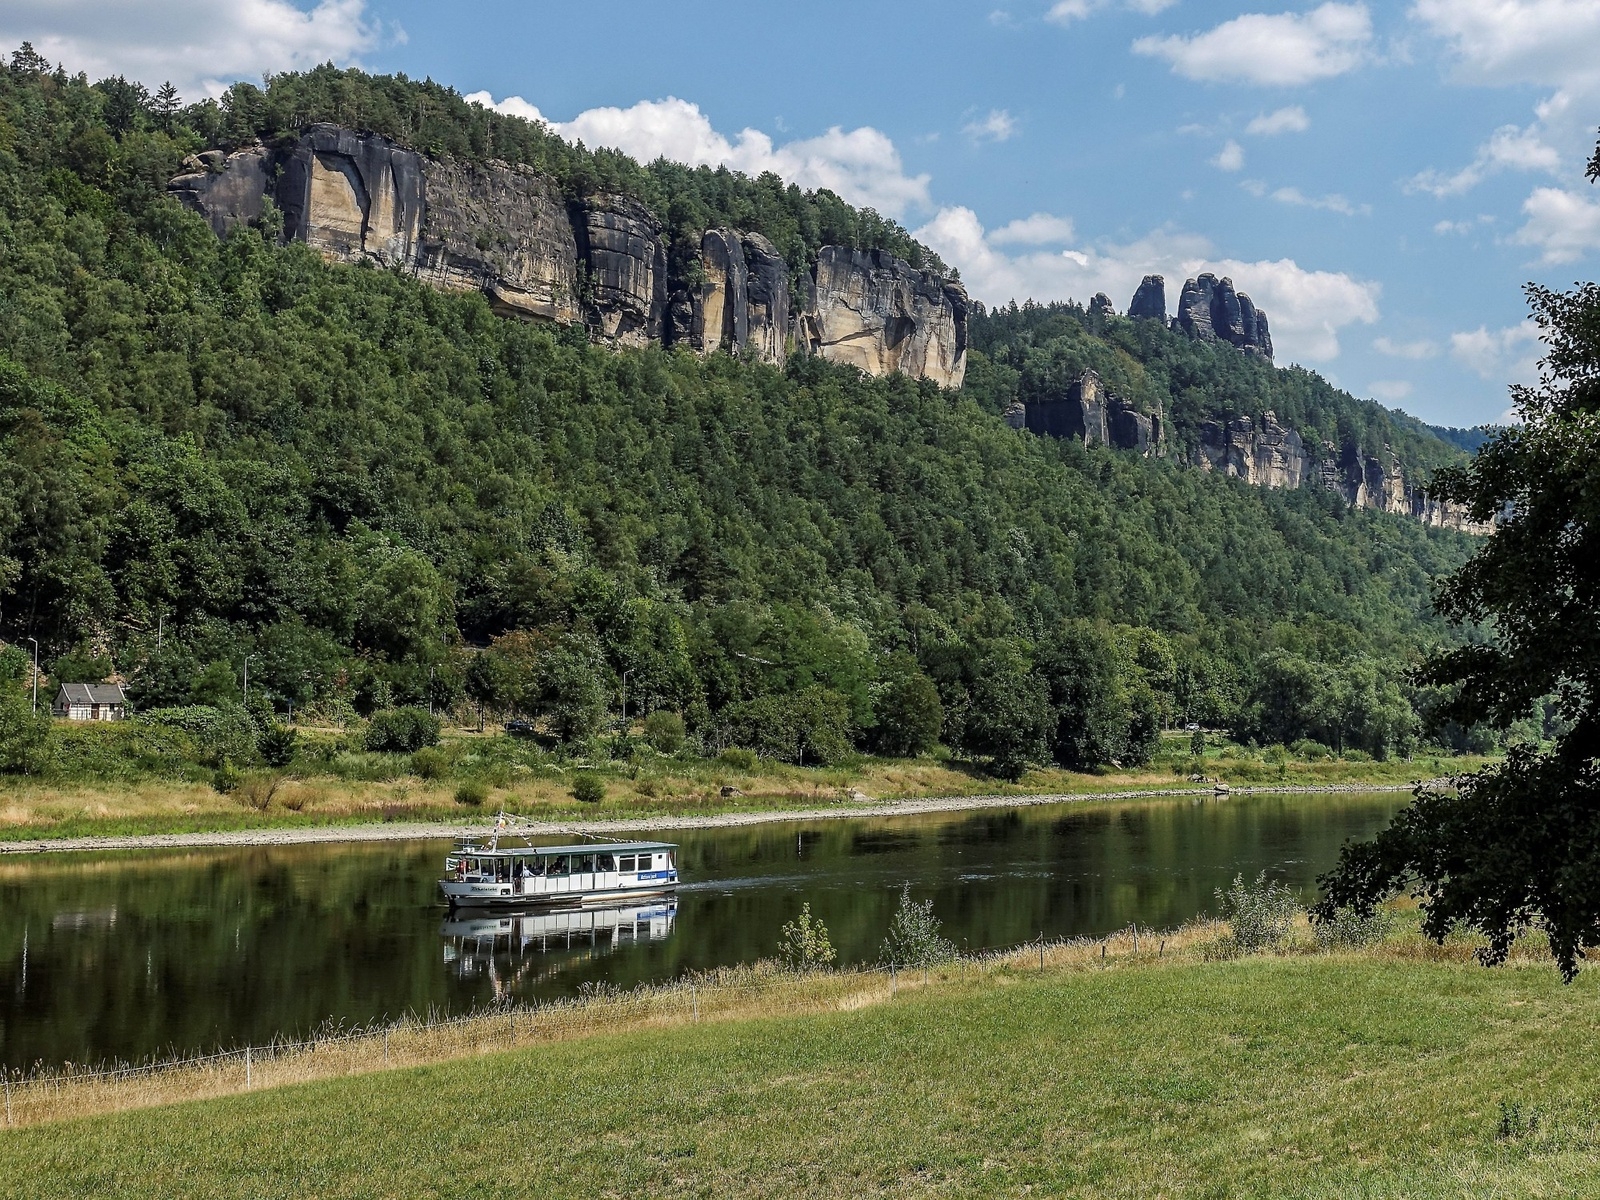 Det är lätt för vandrare att korsa floden Elbe, här finns gott om färjor och båtar. I bakgrunden syns några av Schrammsteines imponerande klippor.
Foto: Kerstin Krafft